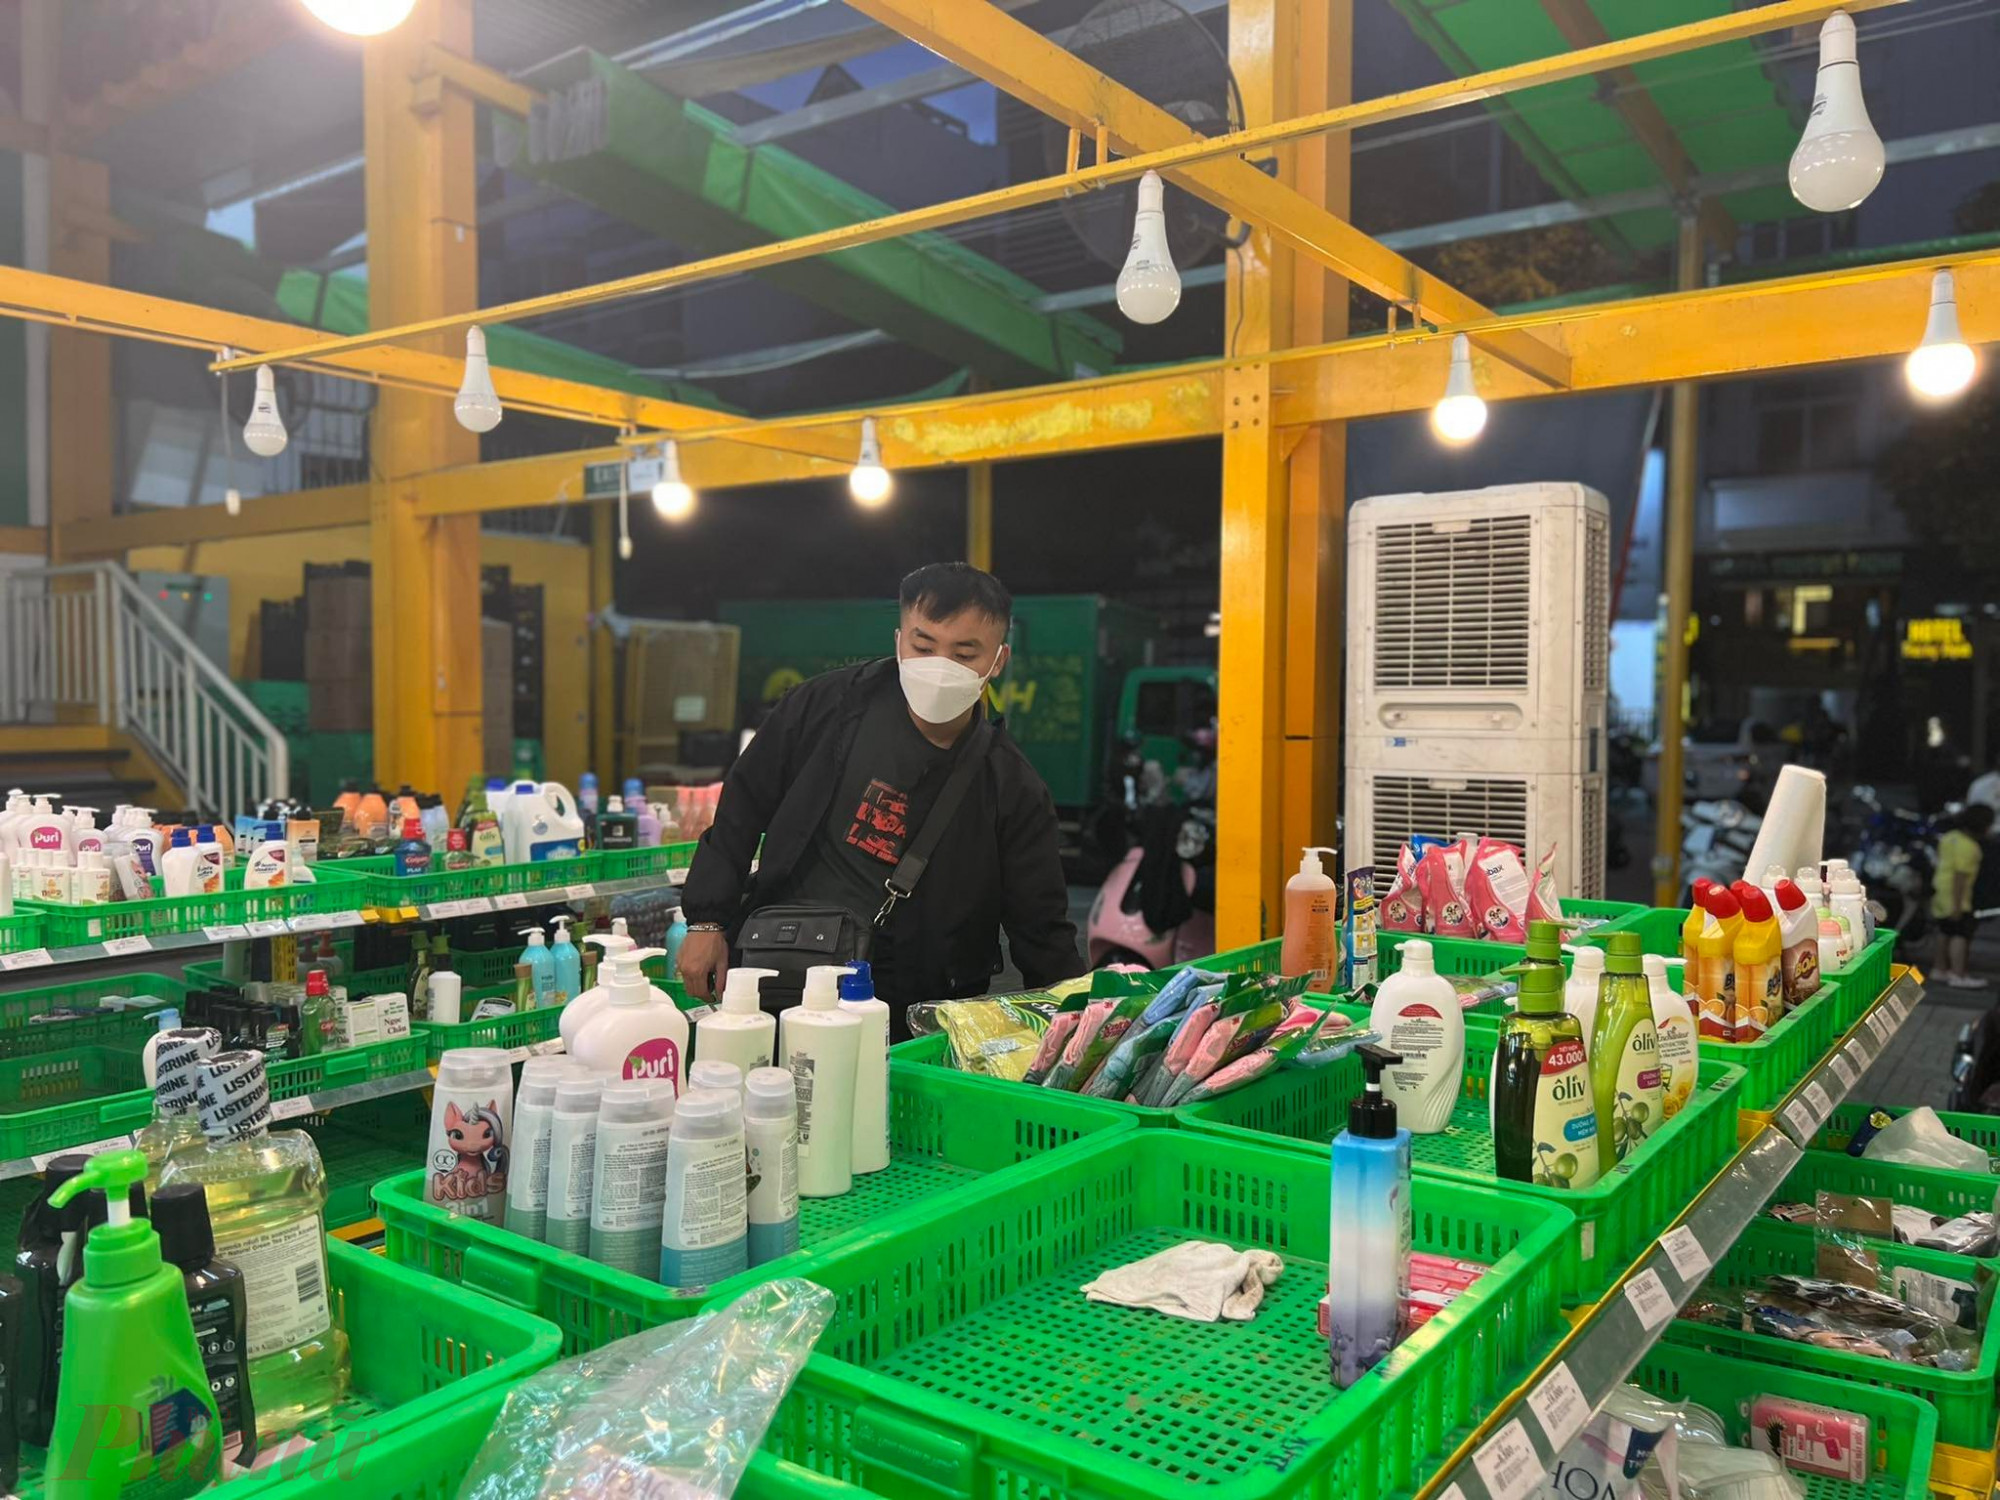 19g tối, một số khách hàng vẫn tranh thủ mua hàng giảm giá của bách hoá xanh tại cửa hàng khu vực Phan Xích Long hướng từ cầu Hoàng Hoa Thám (quận Bình Thạnh)